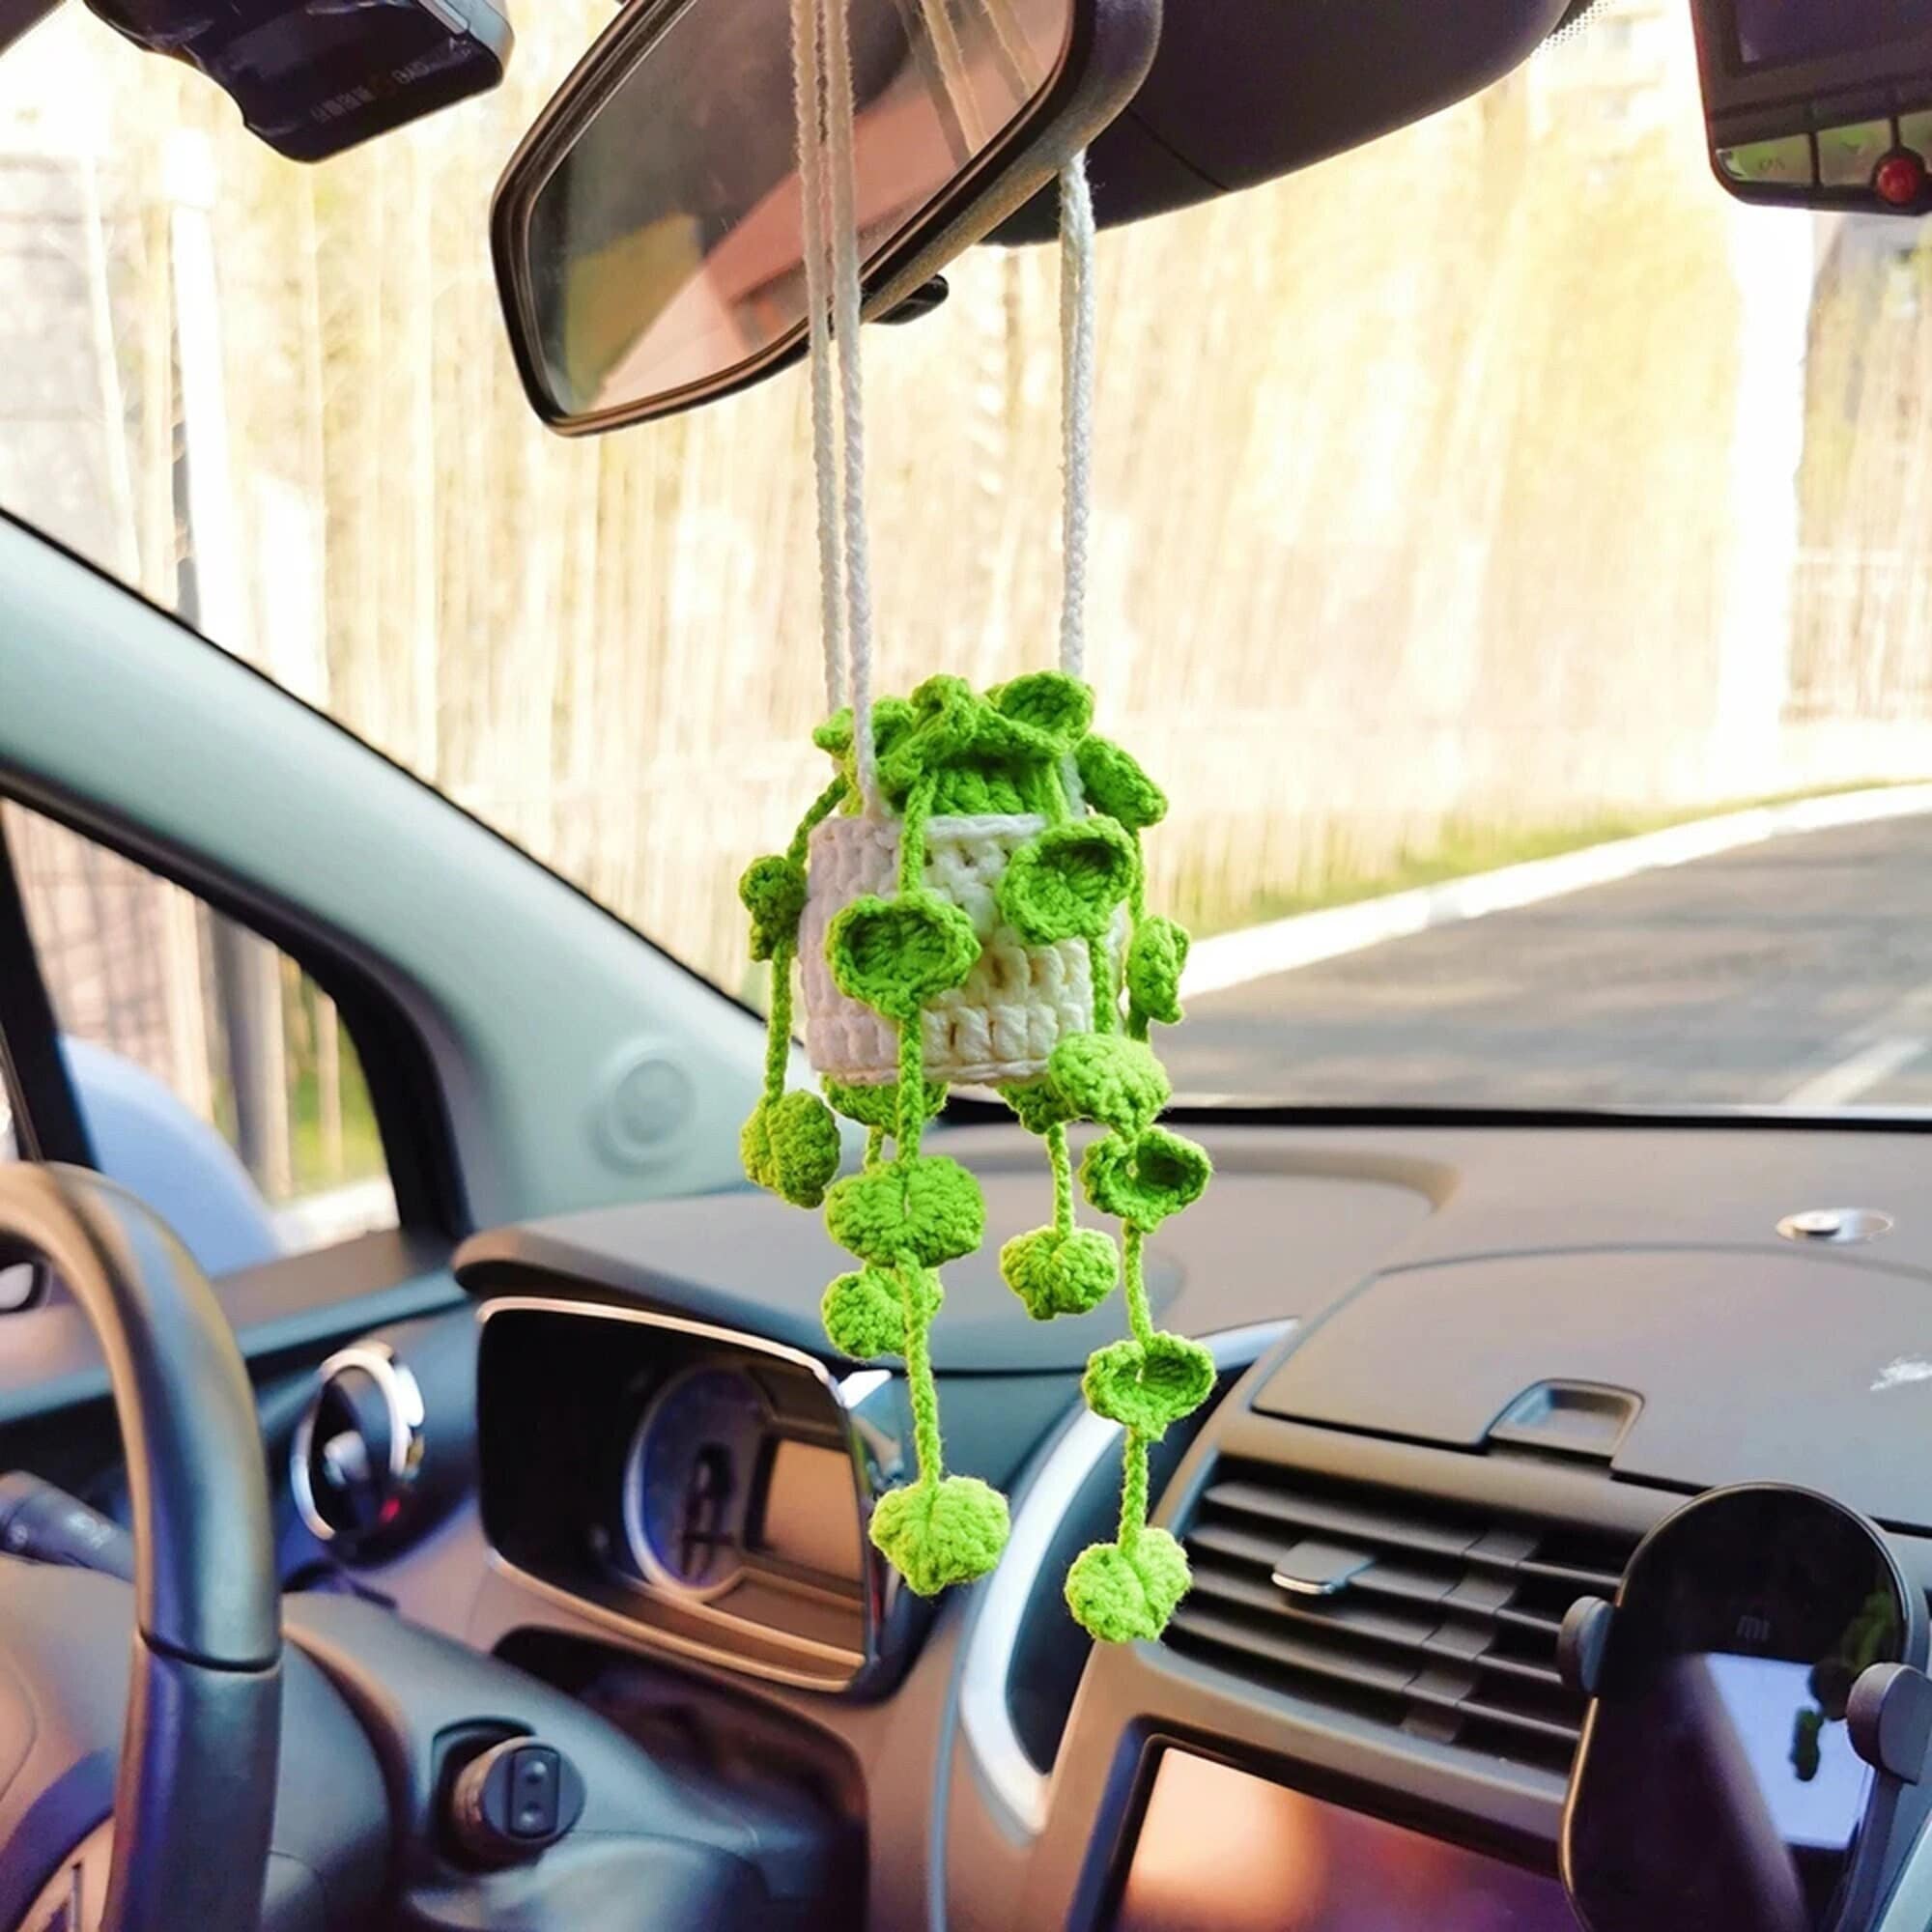 Niedliche Topfpflanzen häkeln Autokorb, hängende Pflanze häkeln für Auto  Rückspiegel